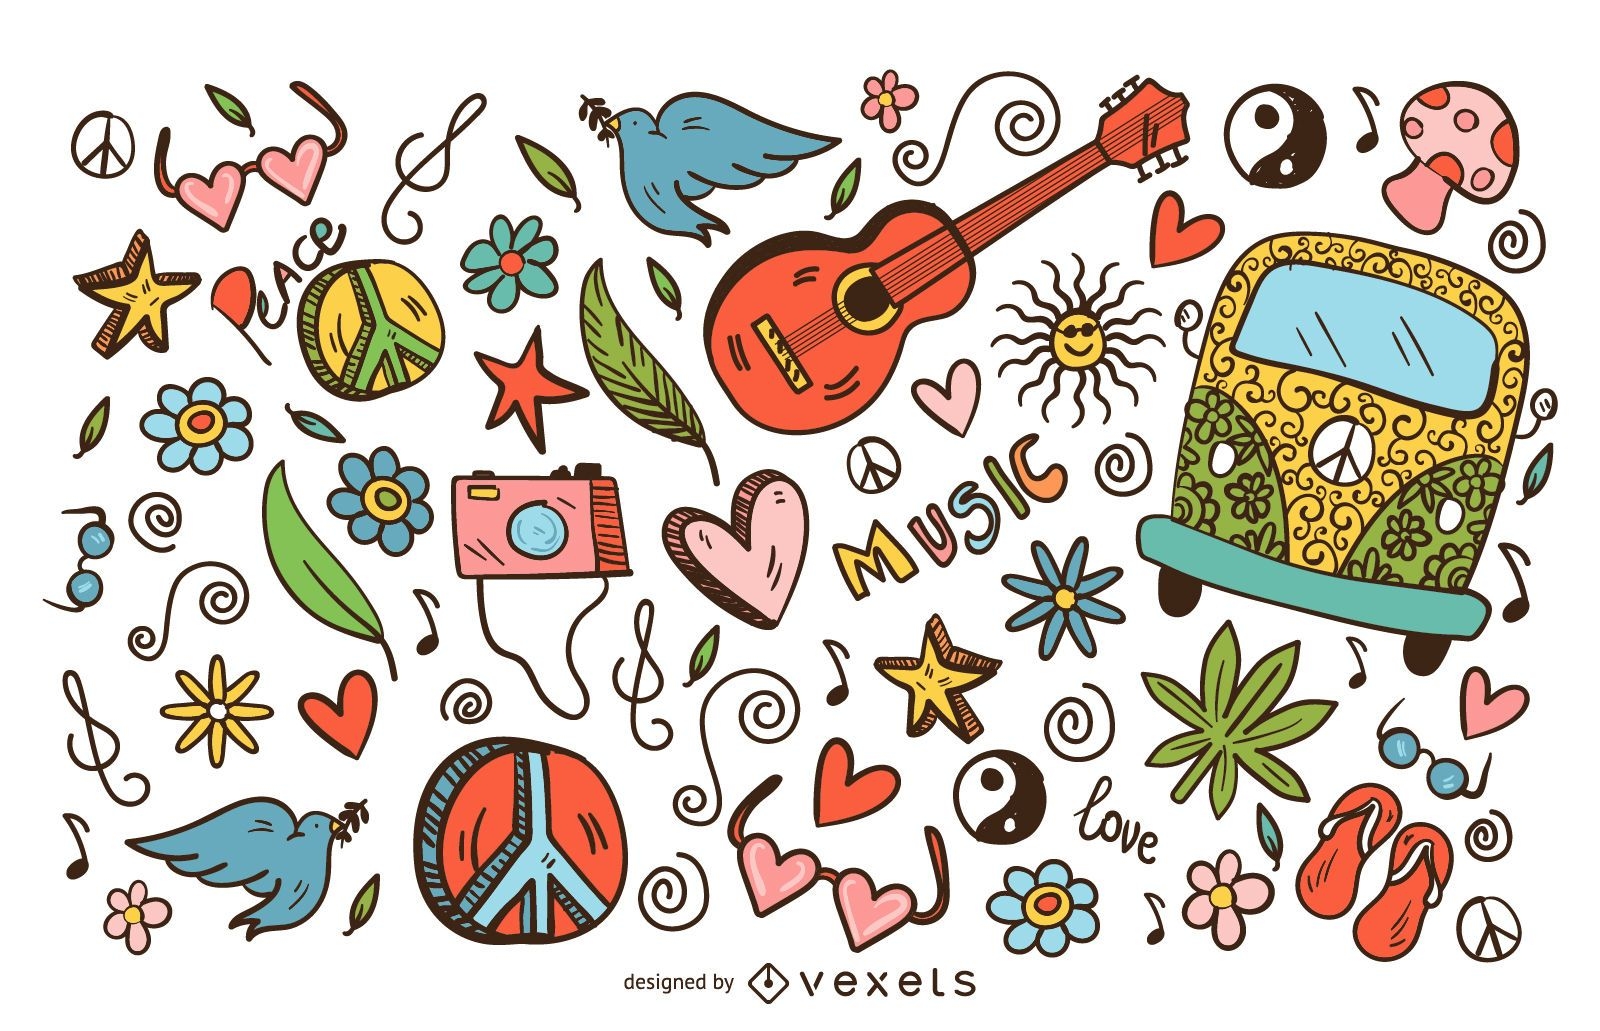 Hippie doodle icons set